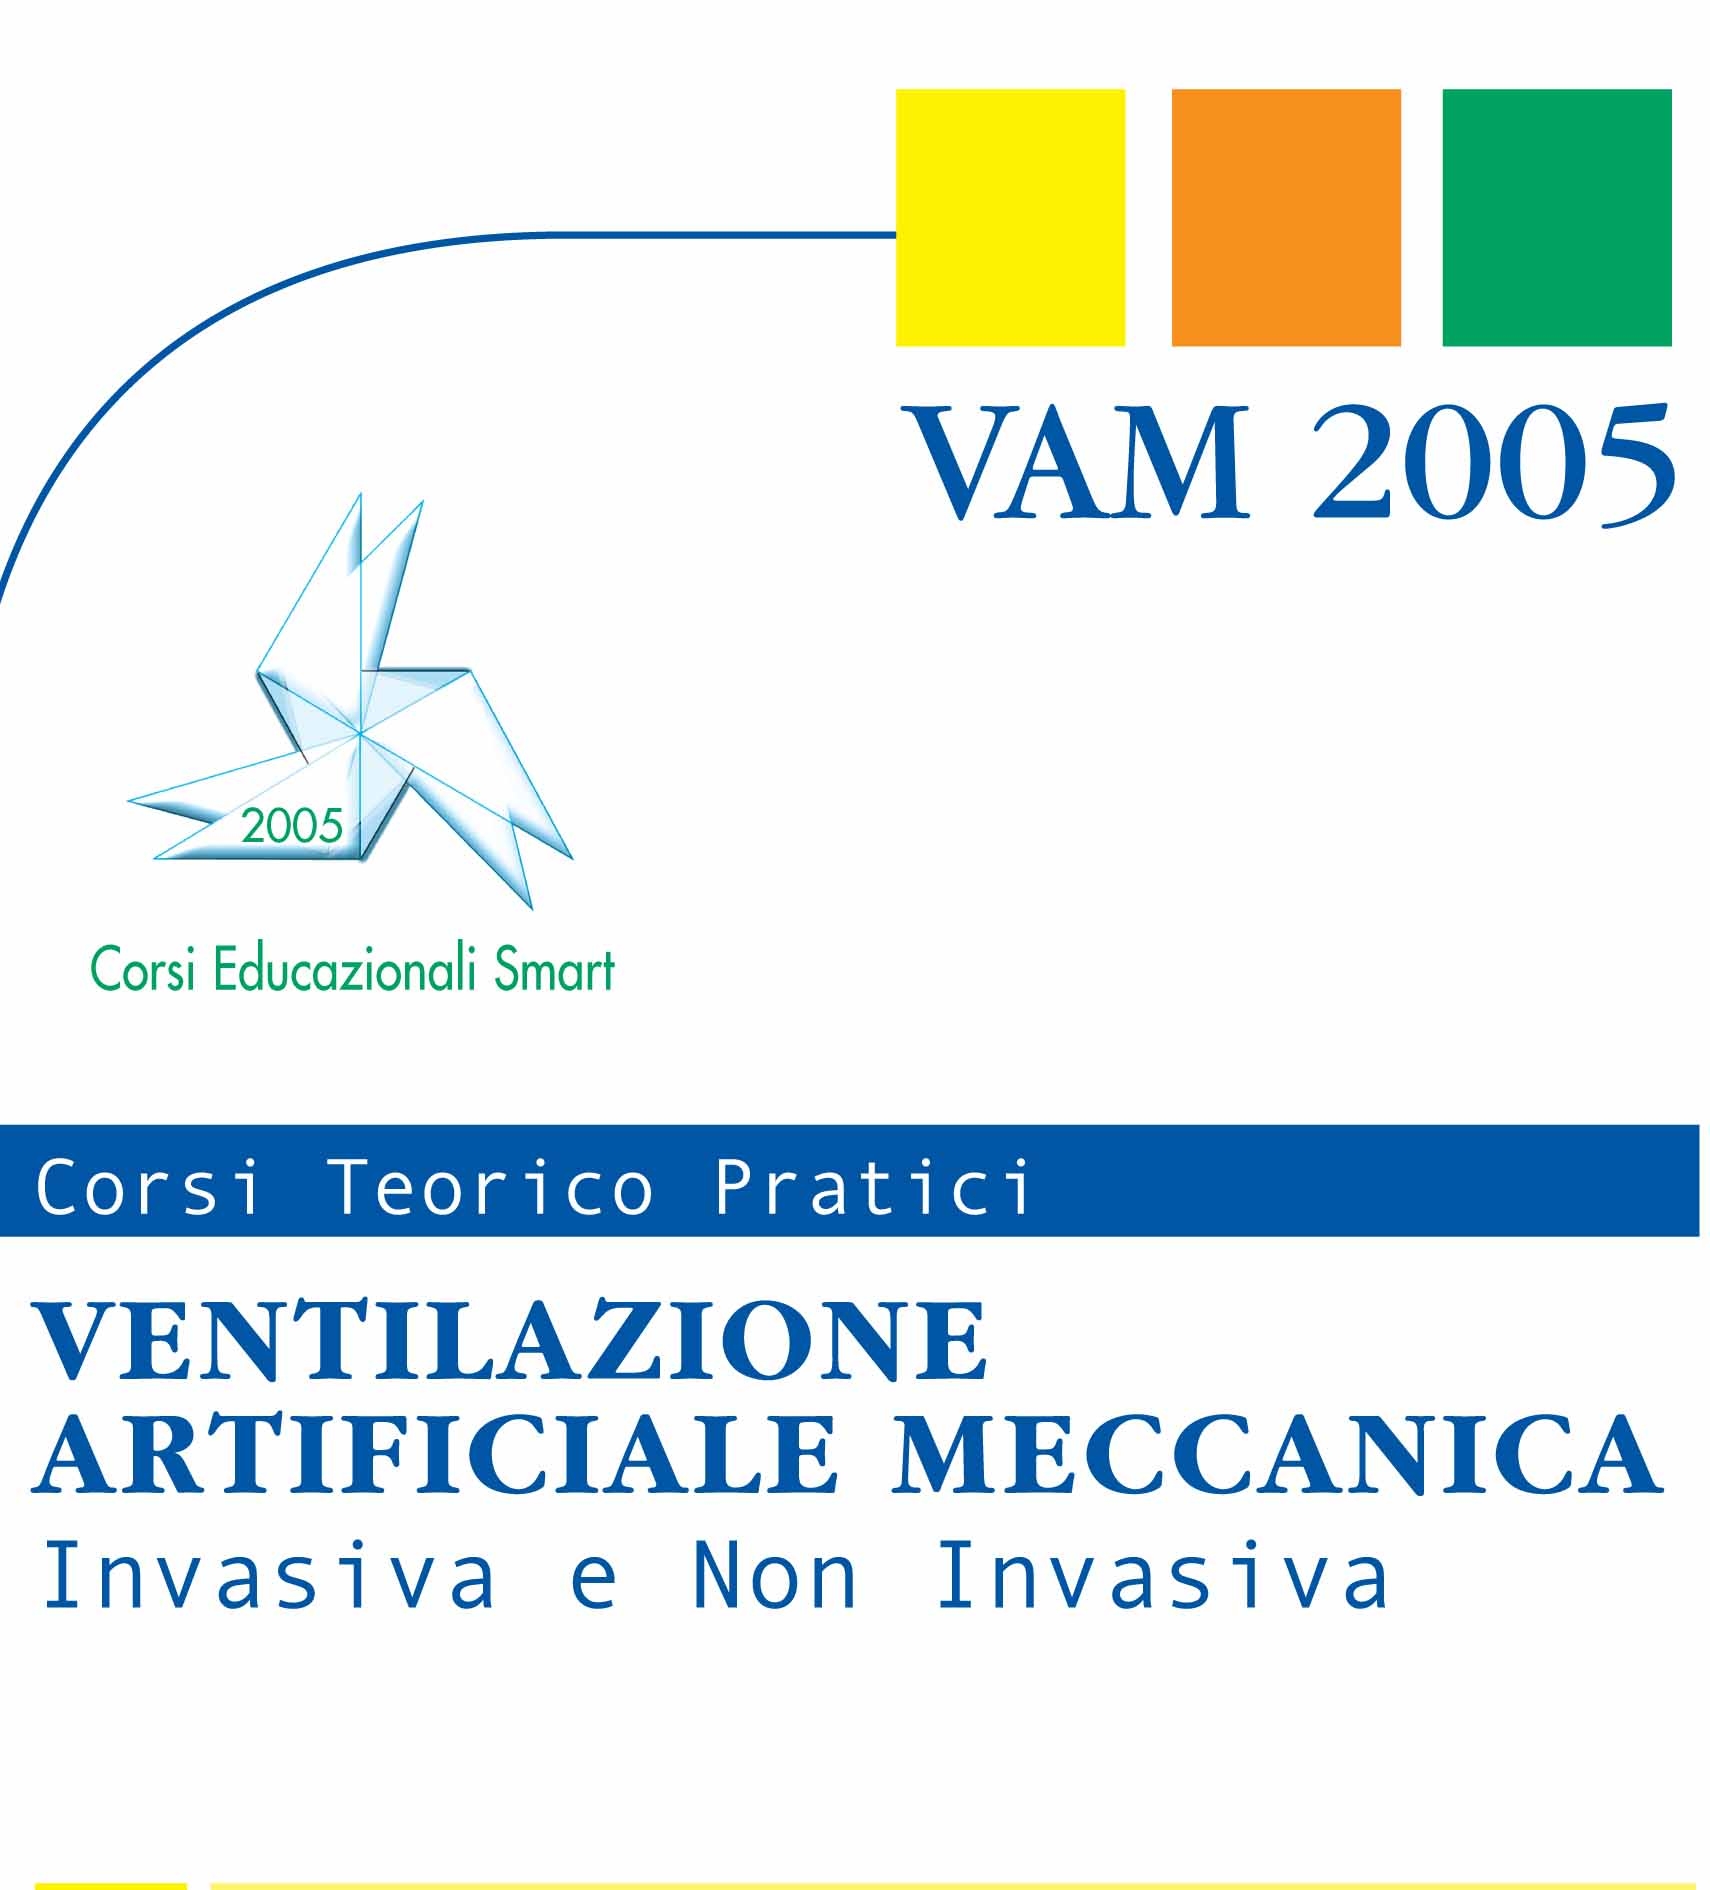 Corsi Vam 2005 Ventilazione Artificiale Meccanica, intensiva e non invasiva